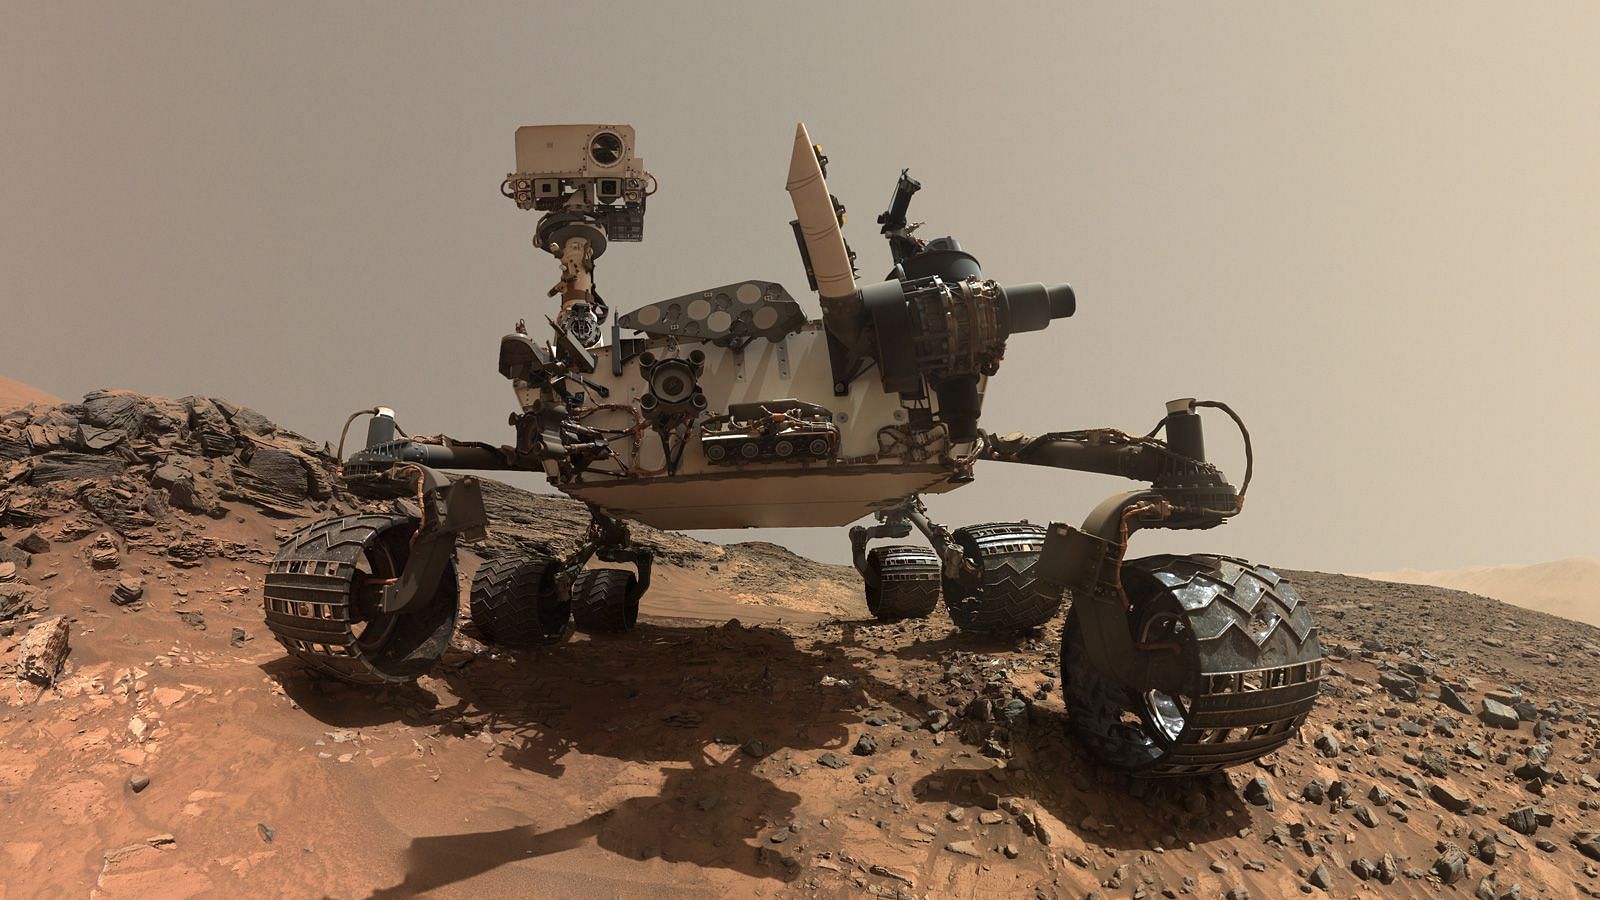 Curiosity Rover from NASA&#039;s Mars Exploration Program (Image via NASA)